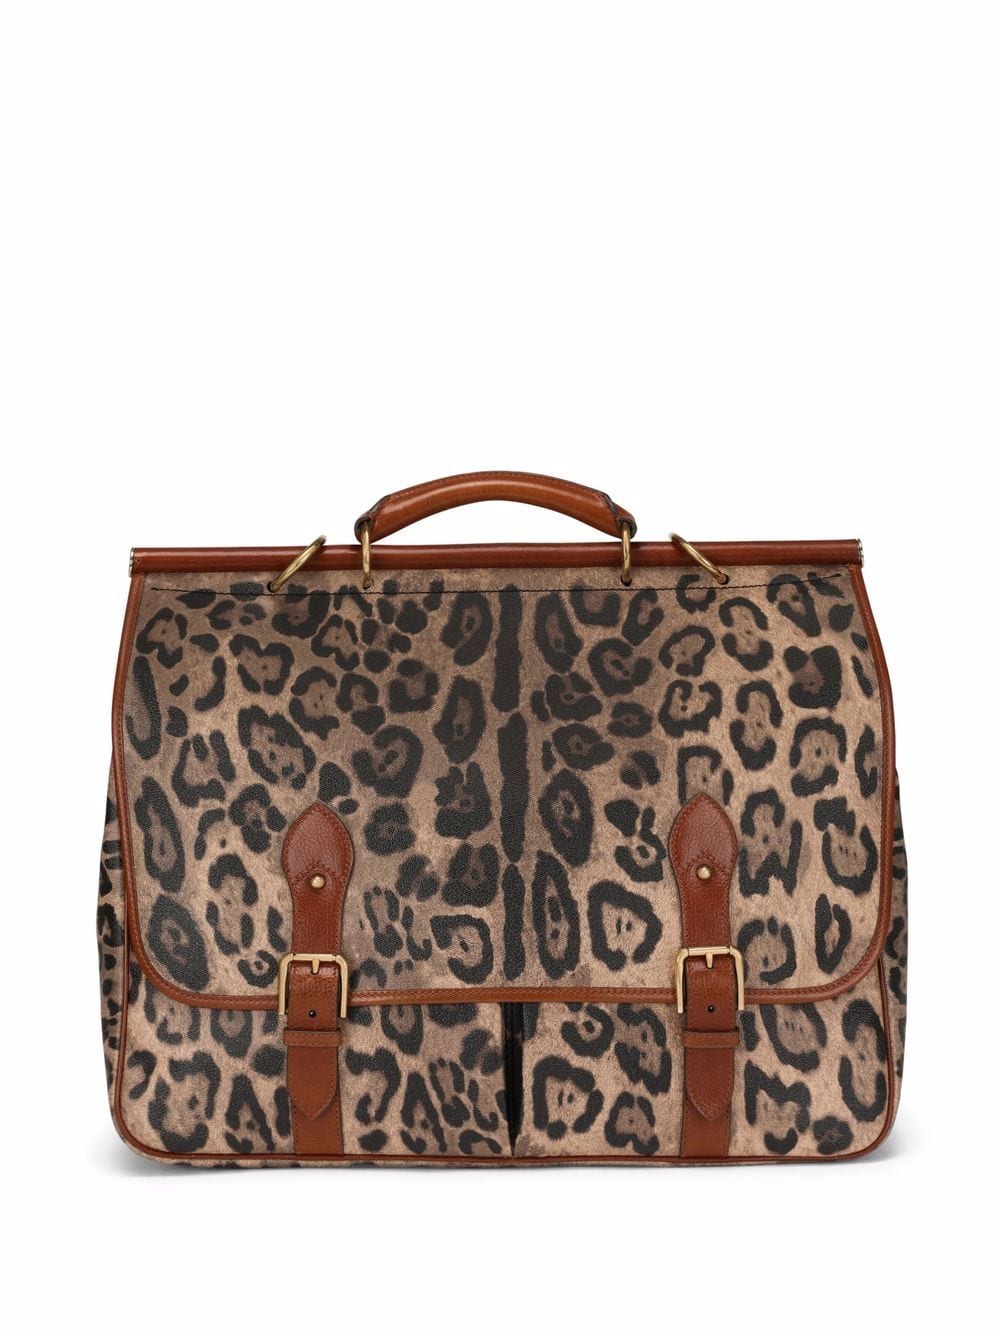 сумка с леопардовым принтом Dolce&Gabbana 17056104636363633263